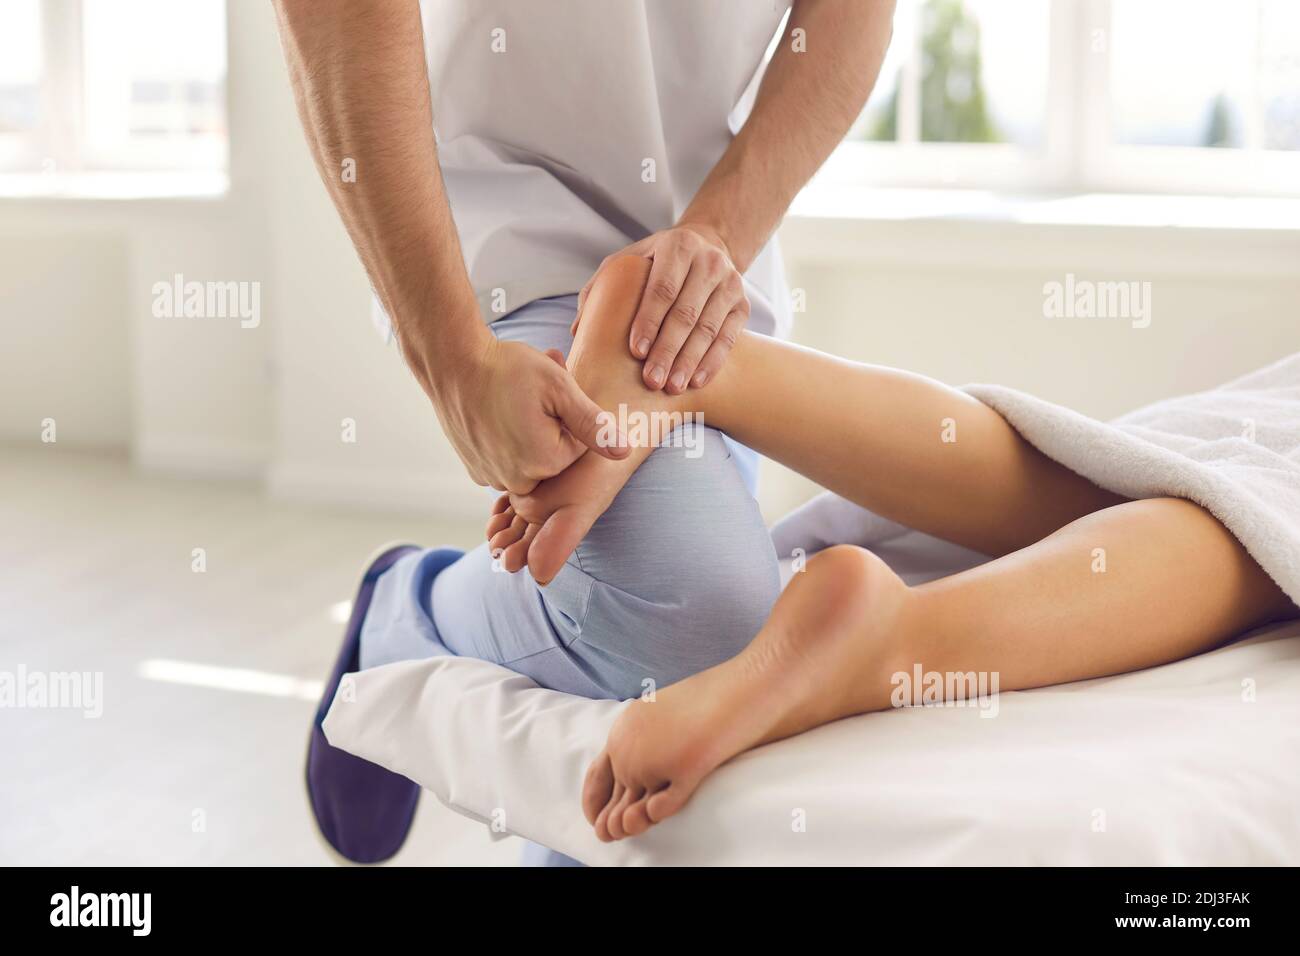 Zugeschnittenes Bild der Hand eines orthopädischen Arztes, der den Fuß eines Patienten untersucht und massiert. Stockfoto